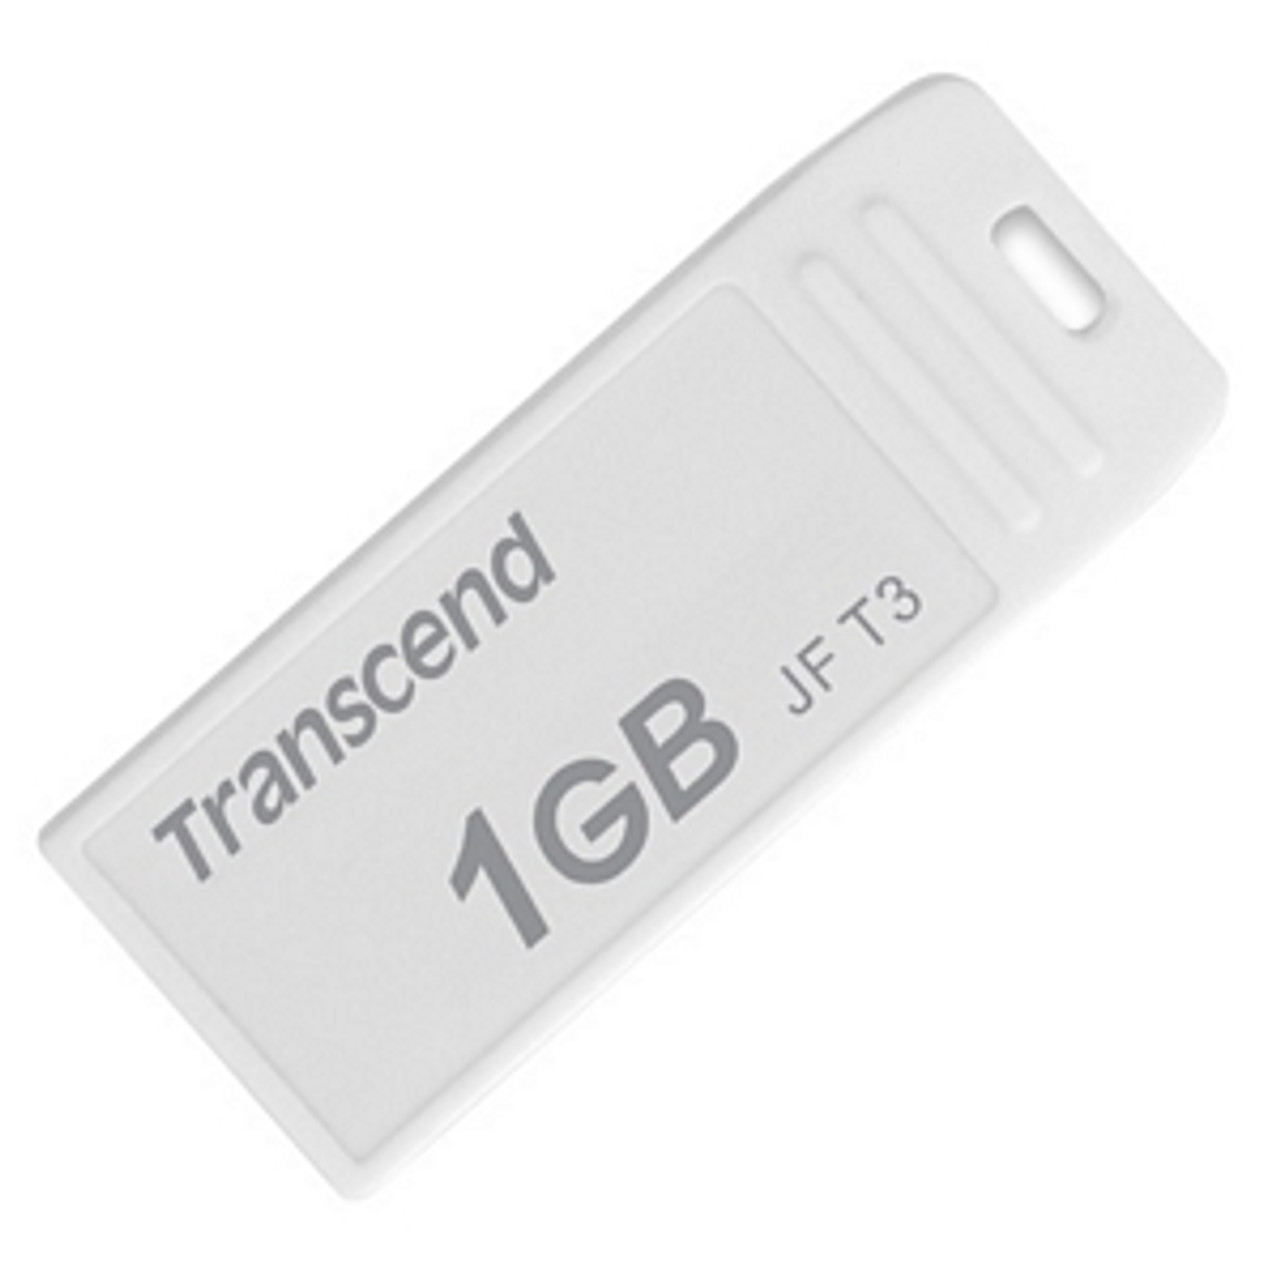 TS1GJFT3-5W - Transcend 1GB JetFlash T3 USB 2.0 Flash Drive (Pack of 5) - 1 GB - USB - External